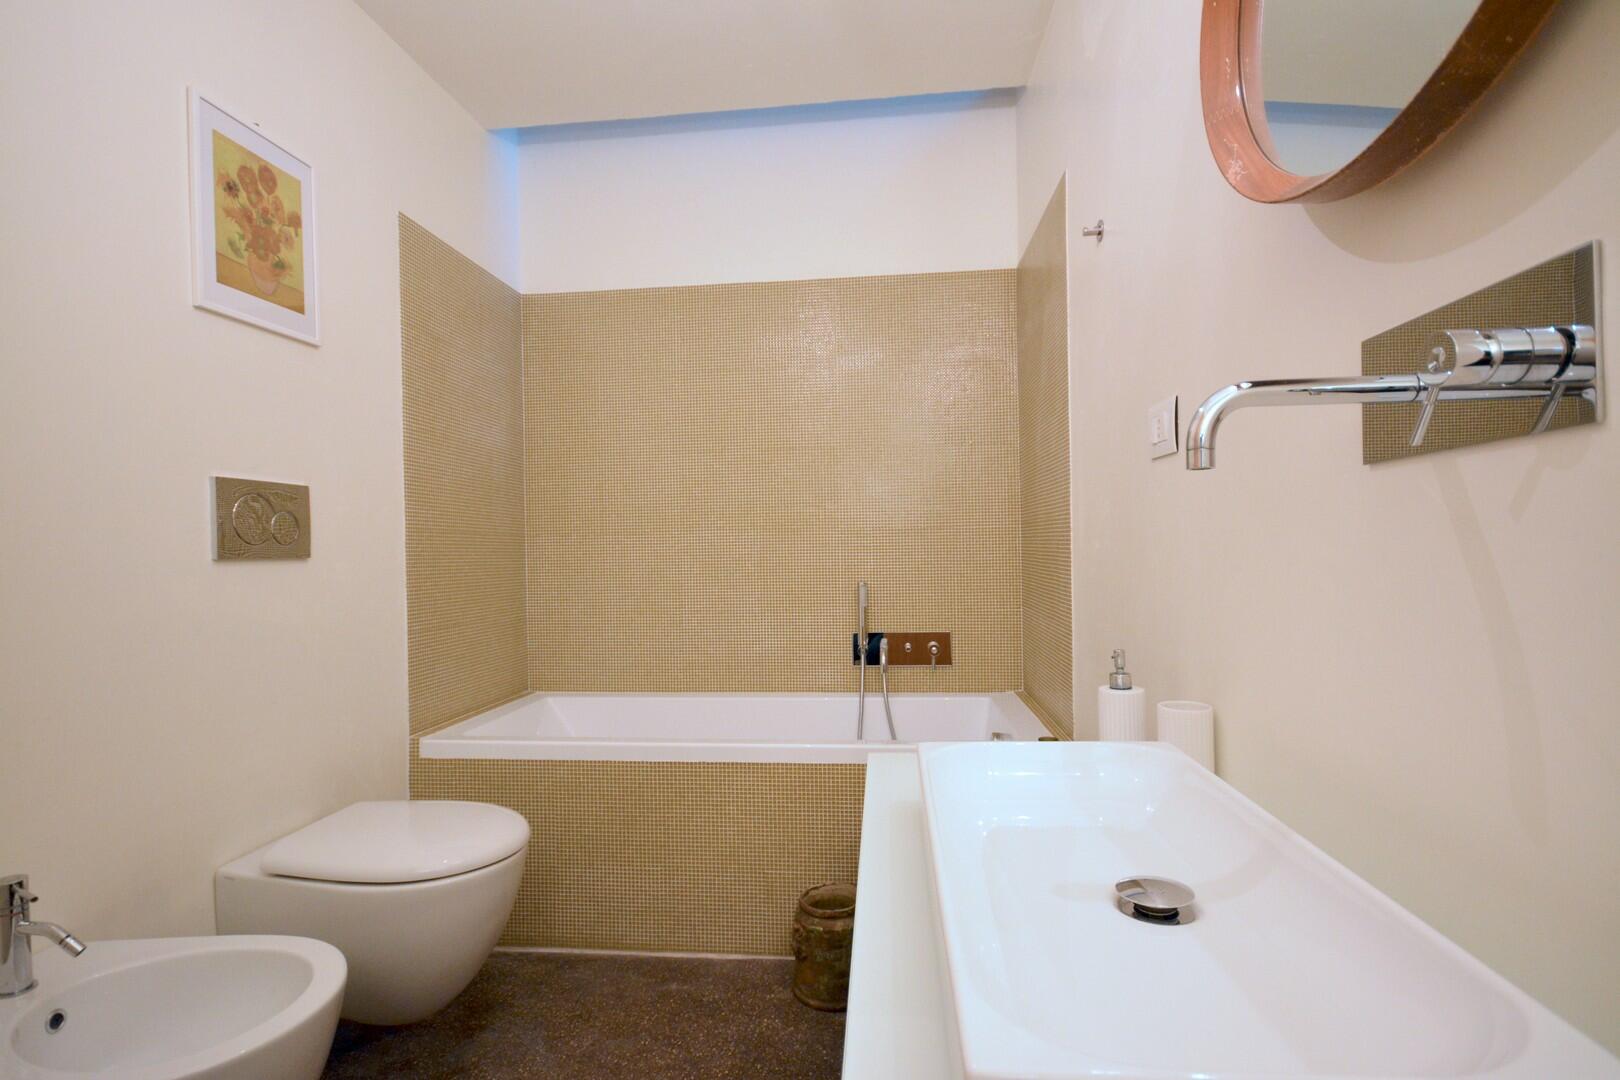 Piano terra - camera matrimoniale C - bagno con vasca